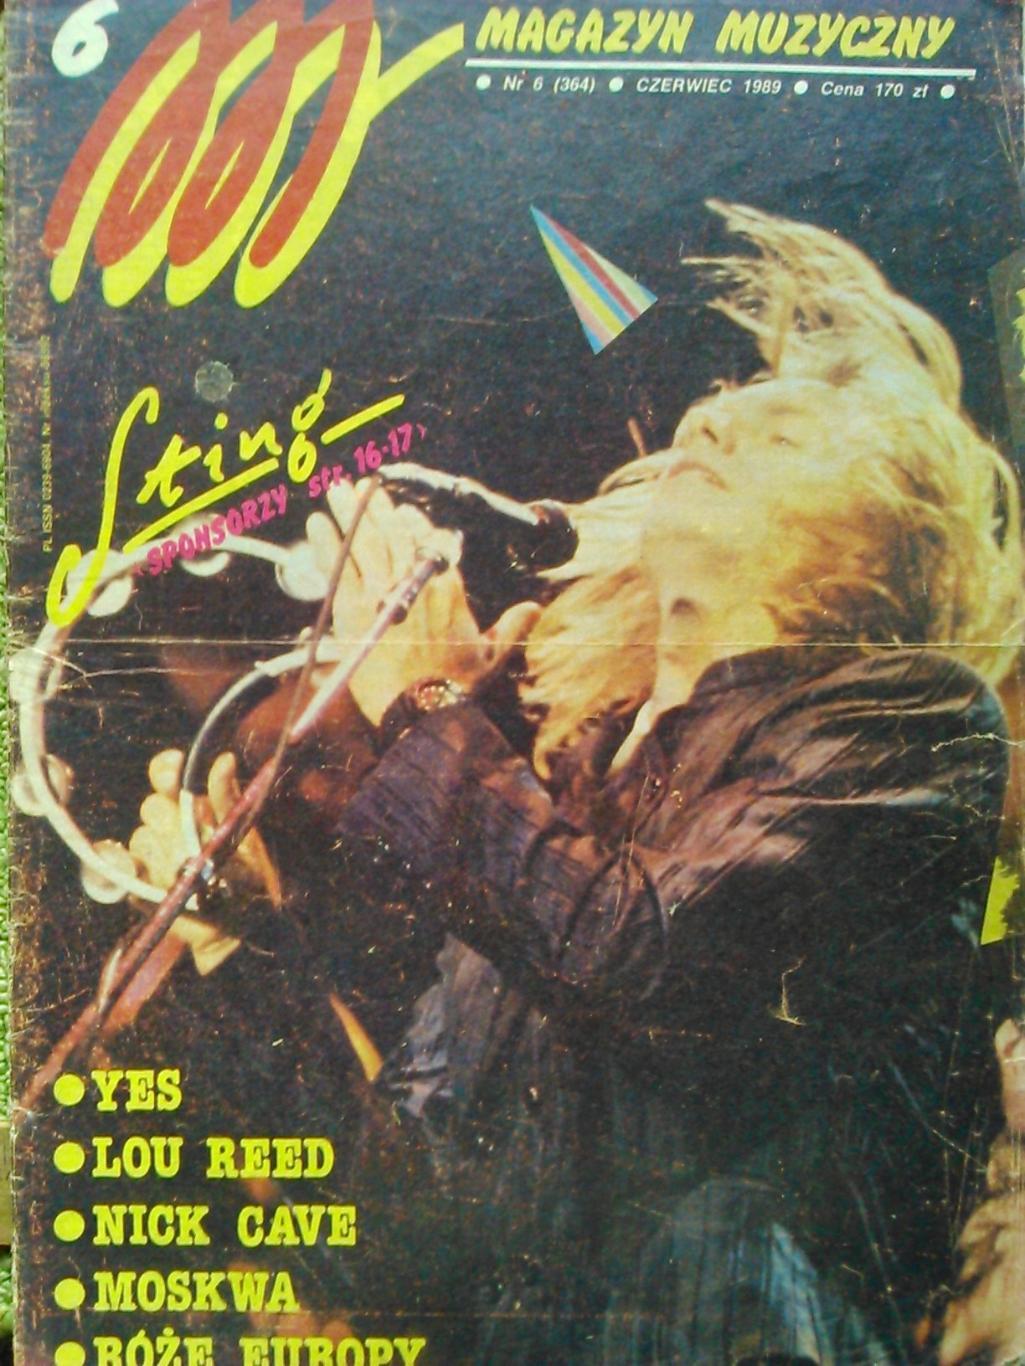 Magazyn muzyczny #3/1989/(Польща). Музыкальный журнал.Слэш.(Ганз-н-Розес). 2